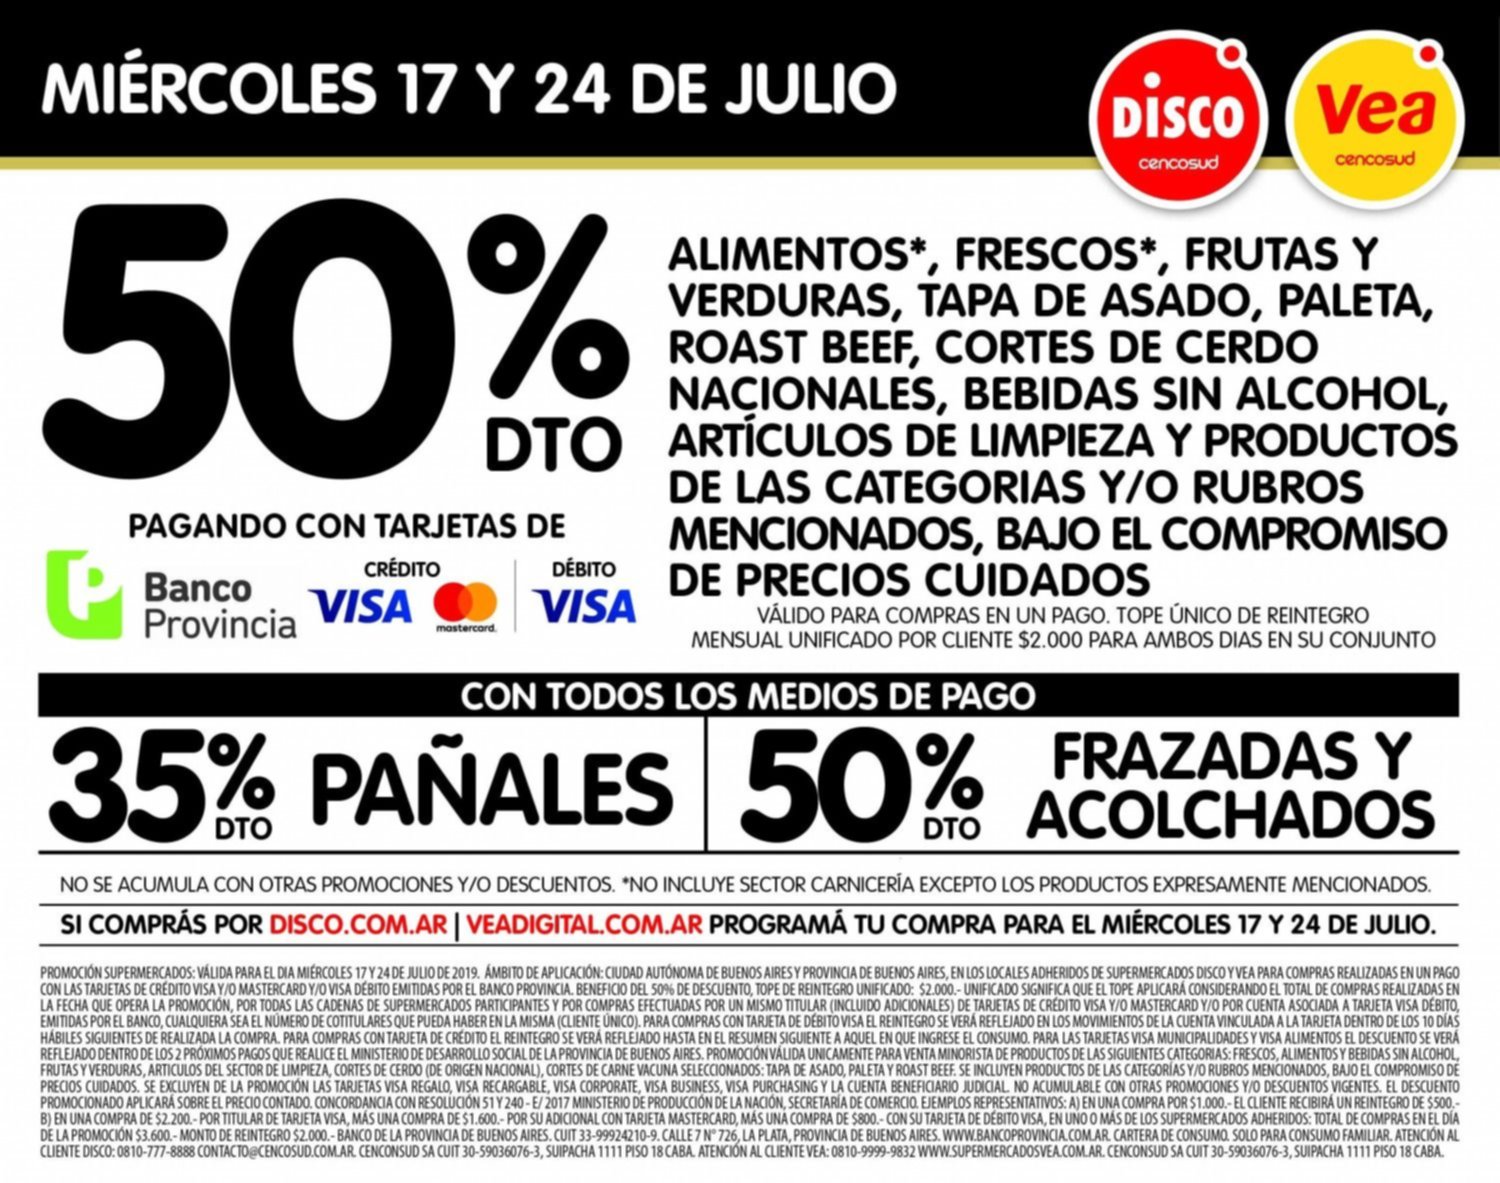 50% de descuento en Disco y Vea con tarjetas del Banco Provincia y Banco Nación